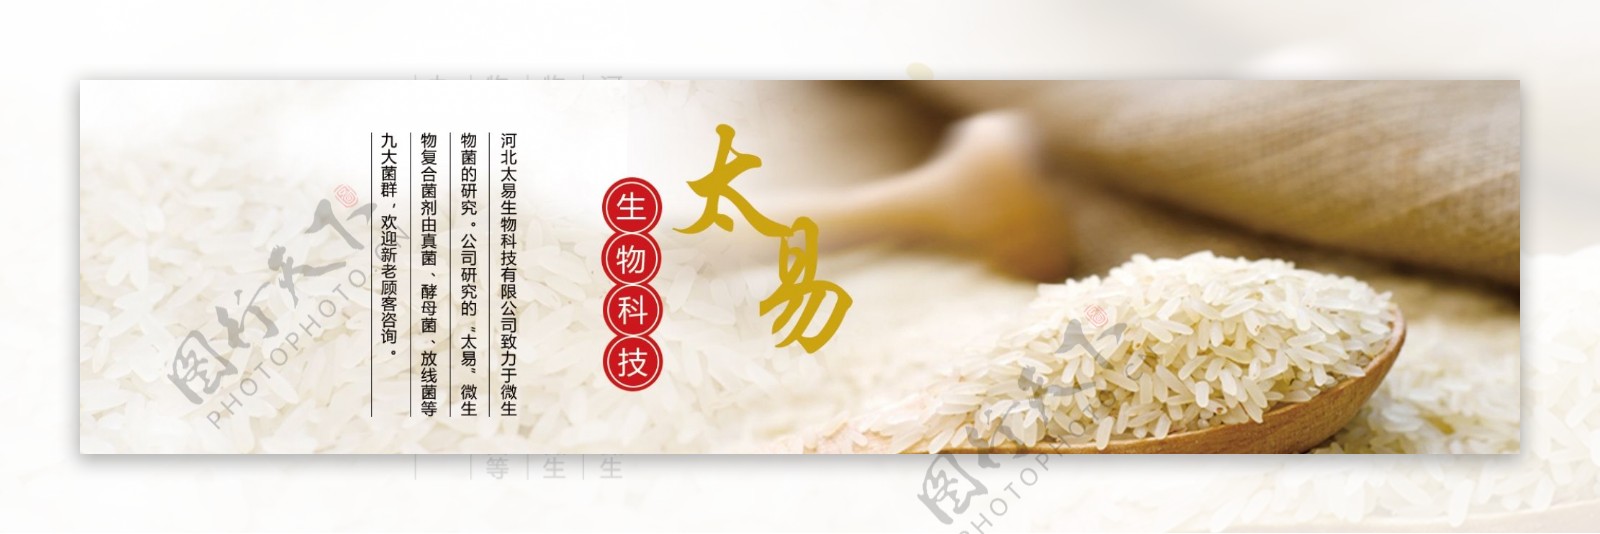 生物菌肥粮食大米网页banner